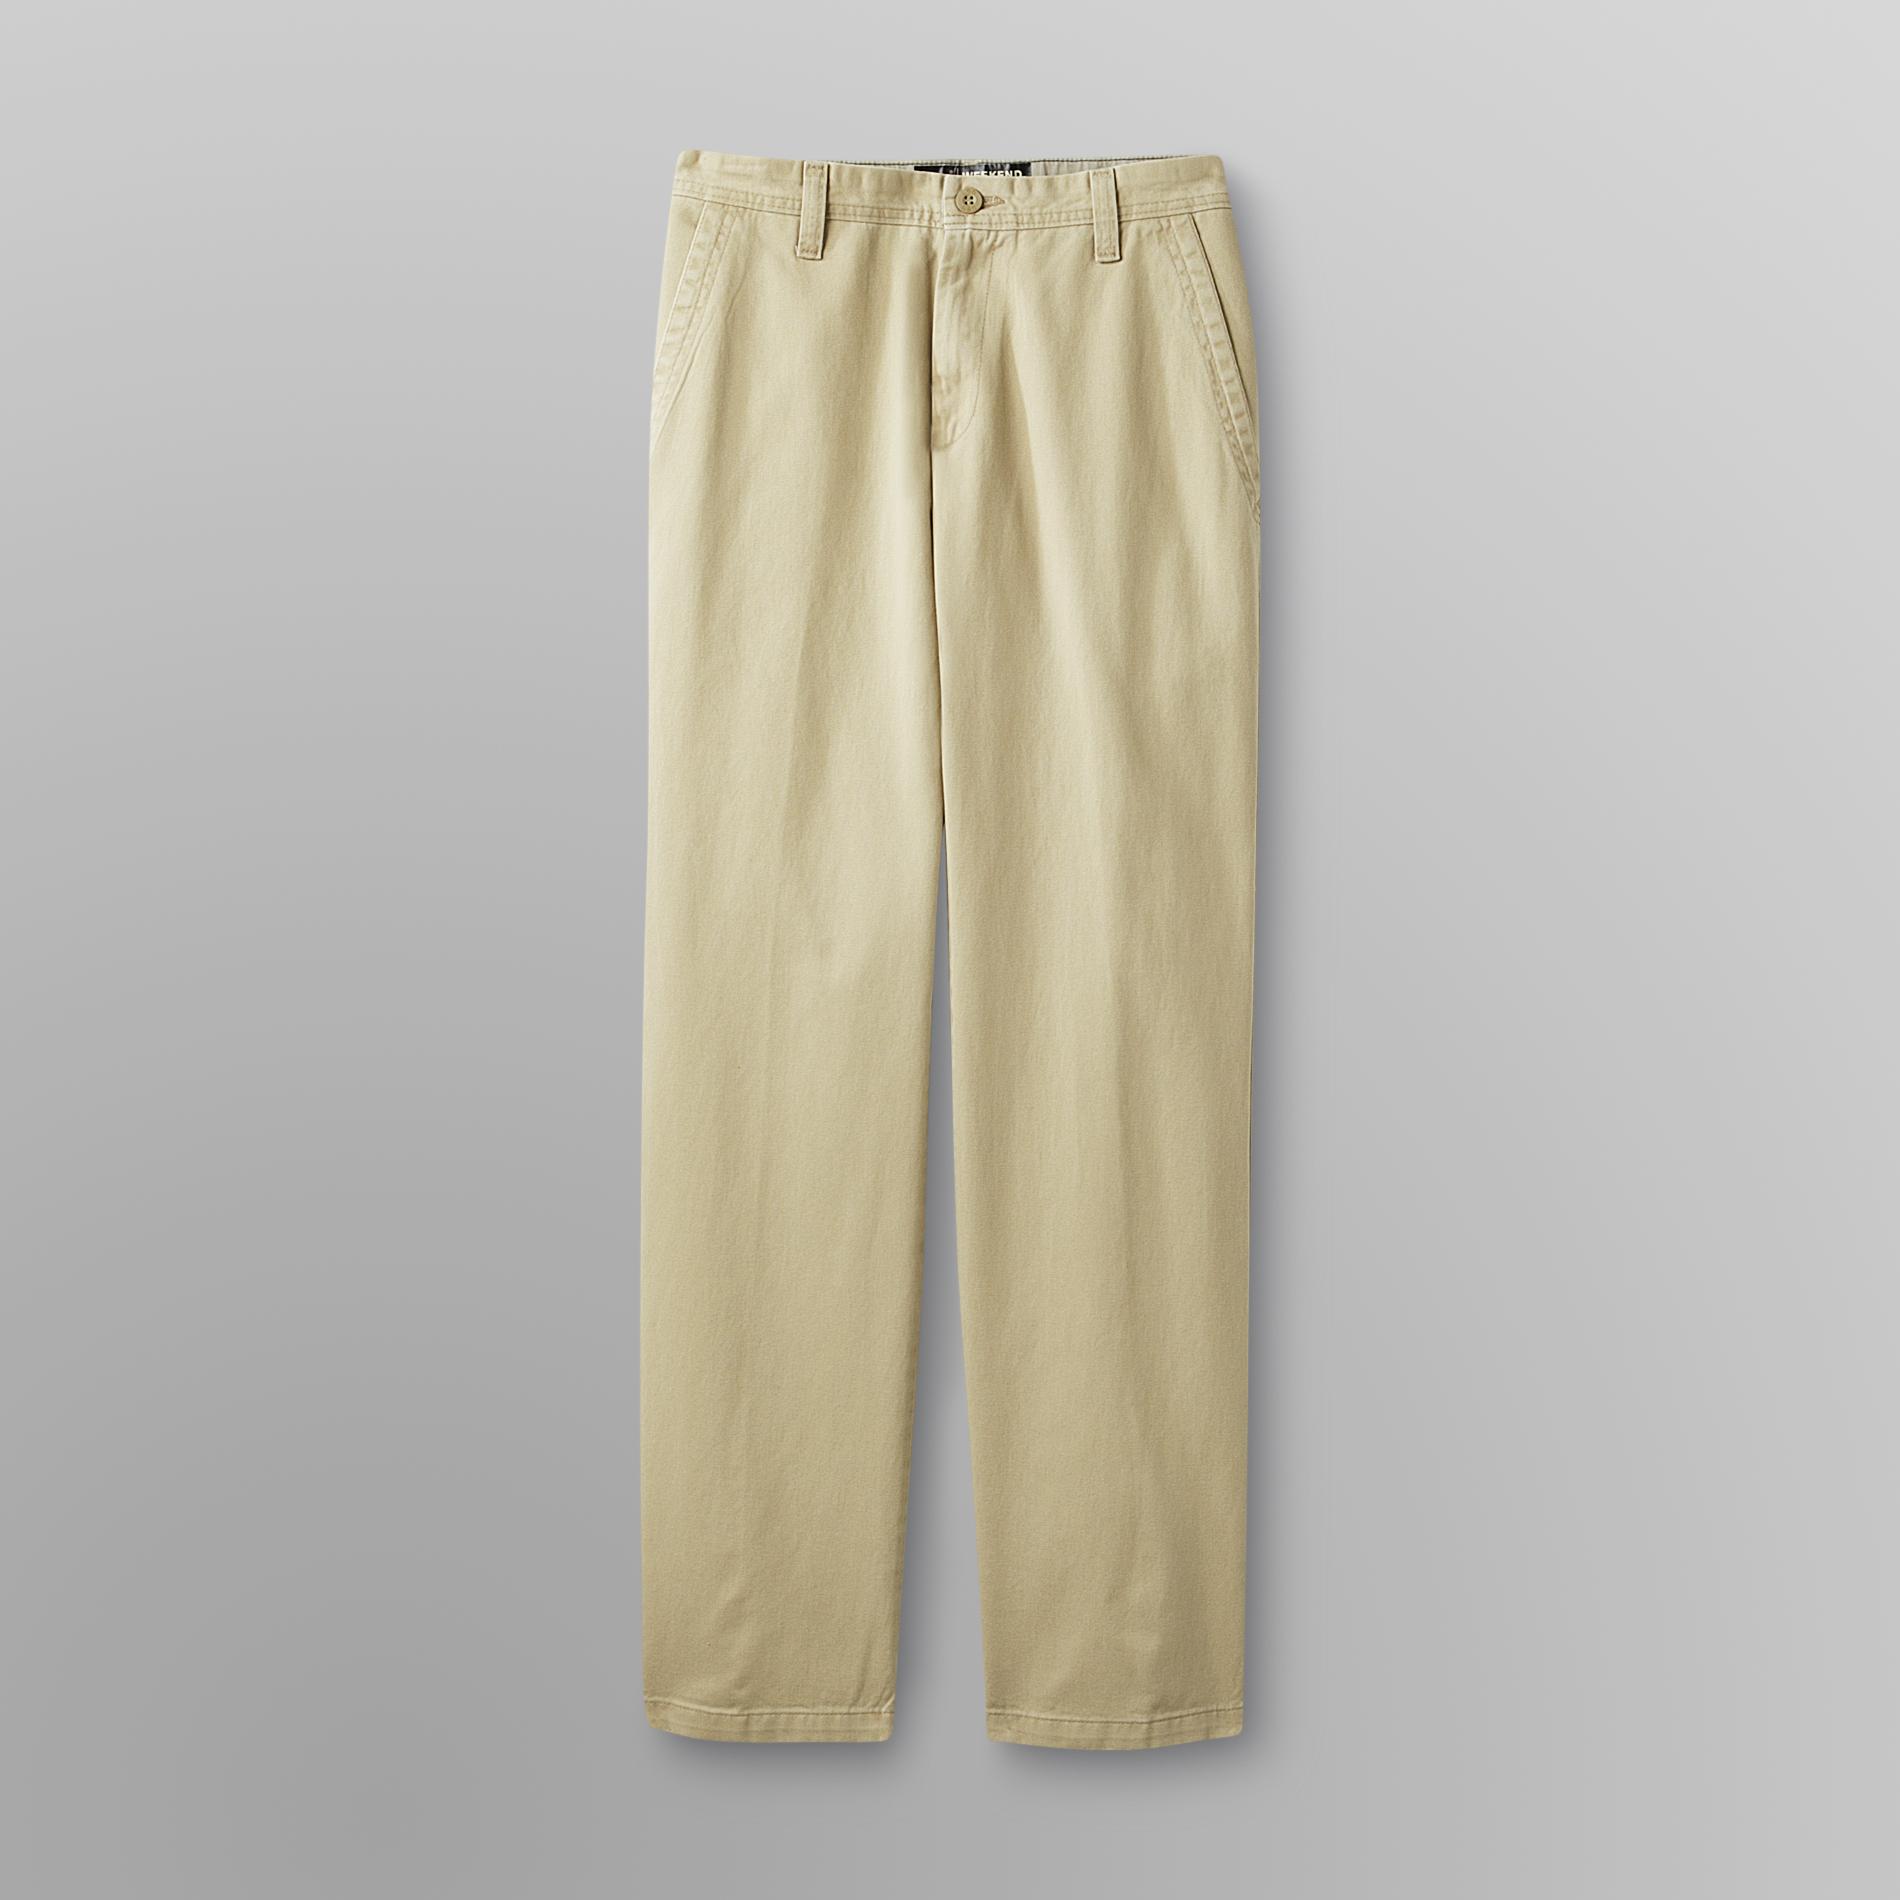 LEE Men's Slim Fit Khaki Pants